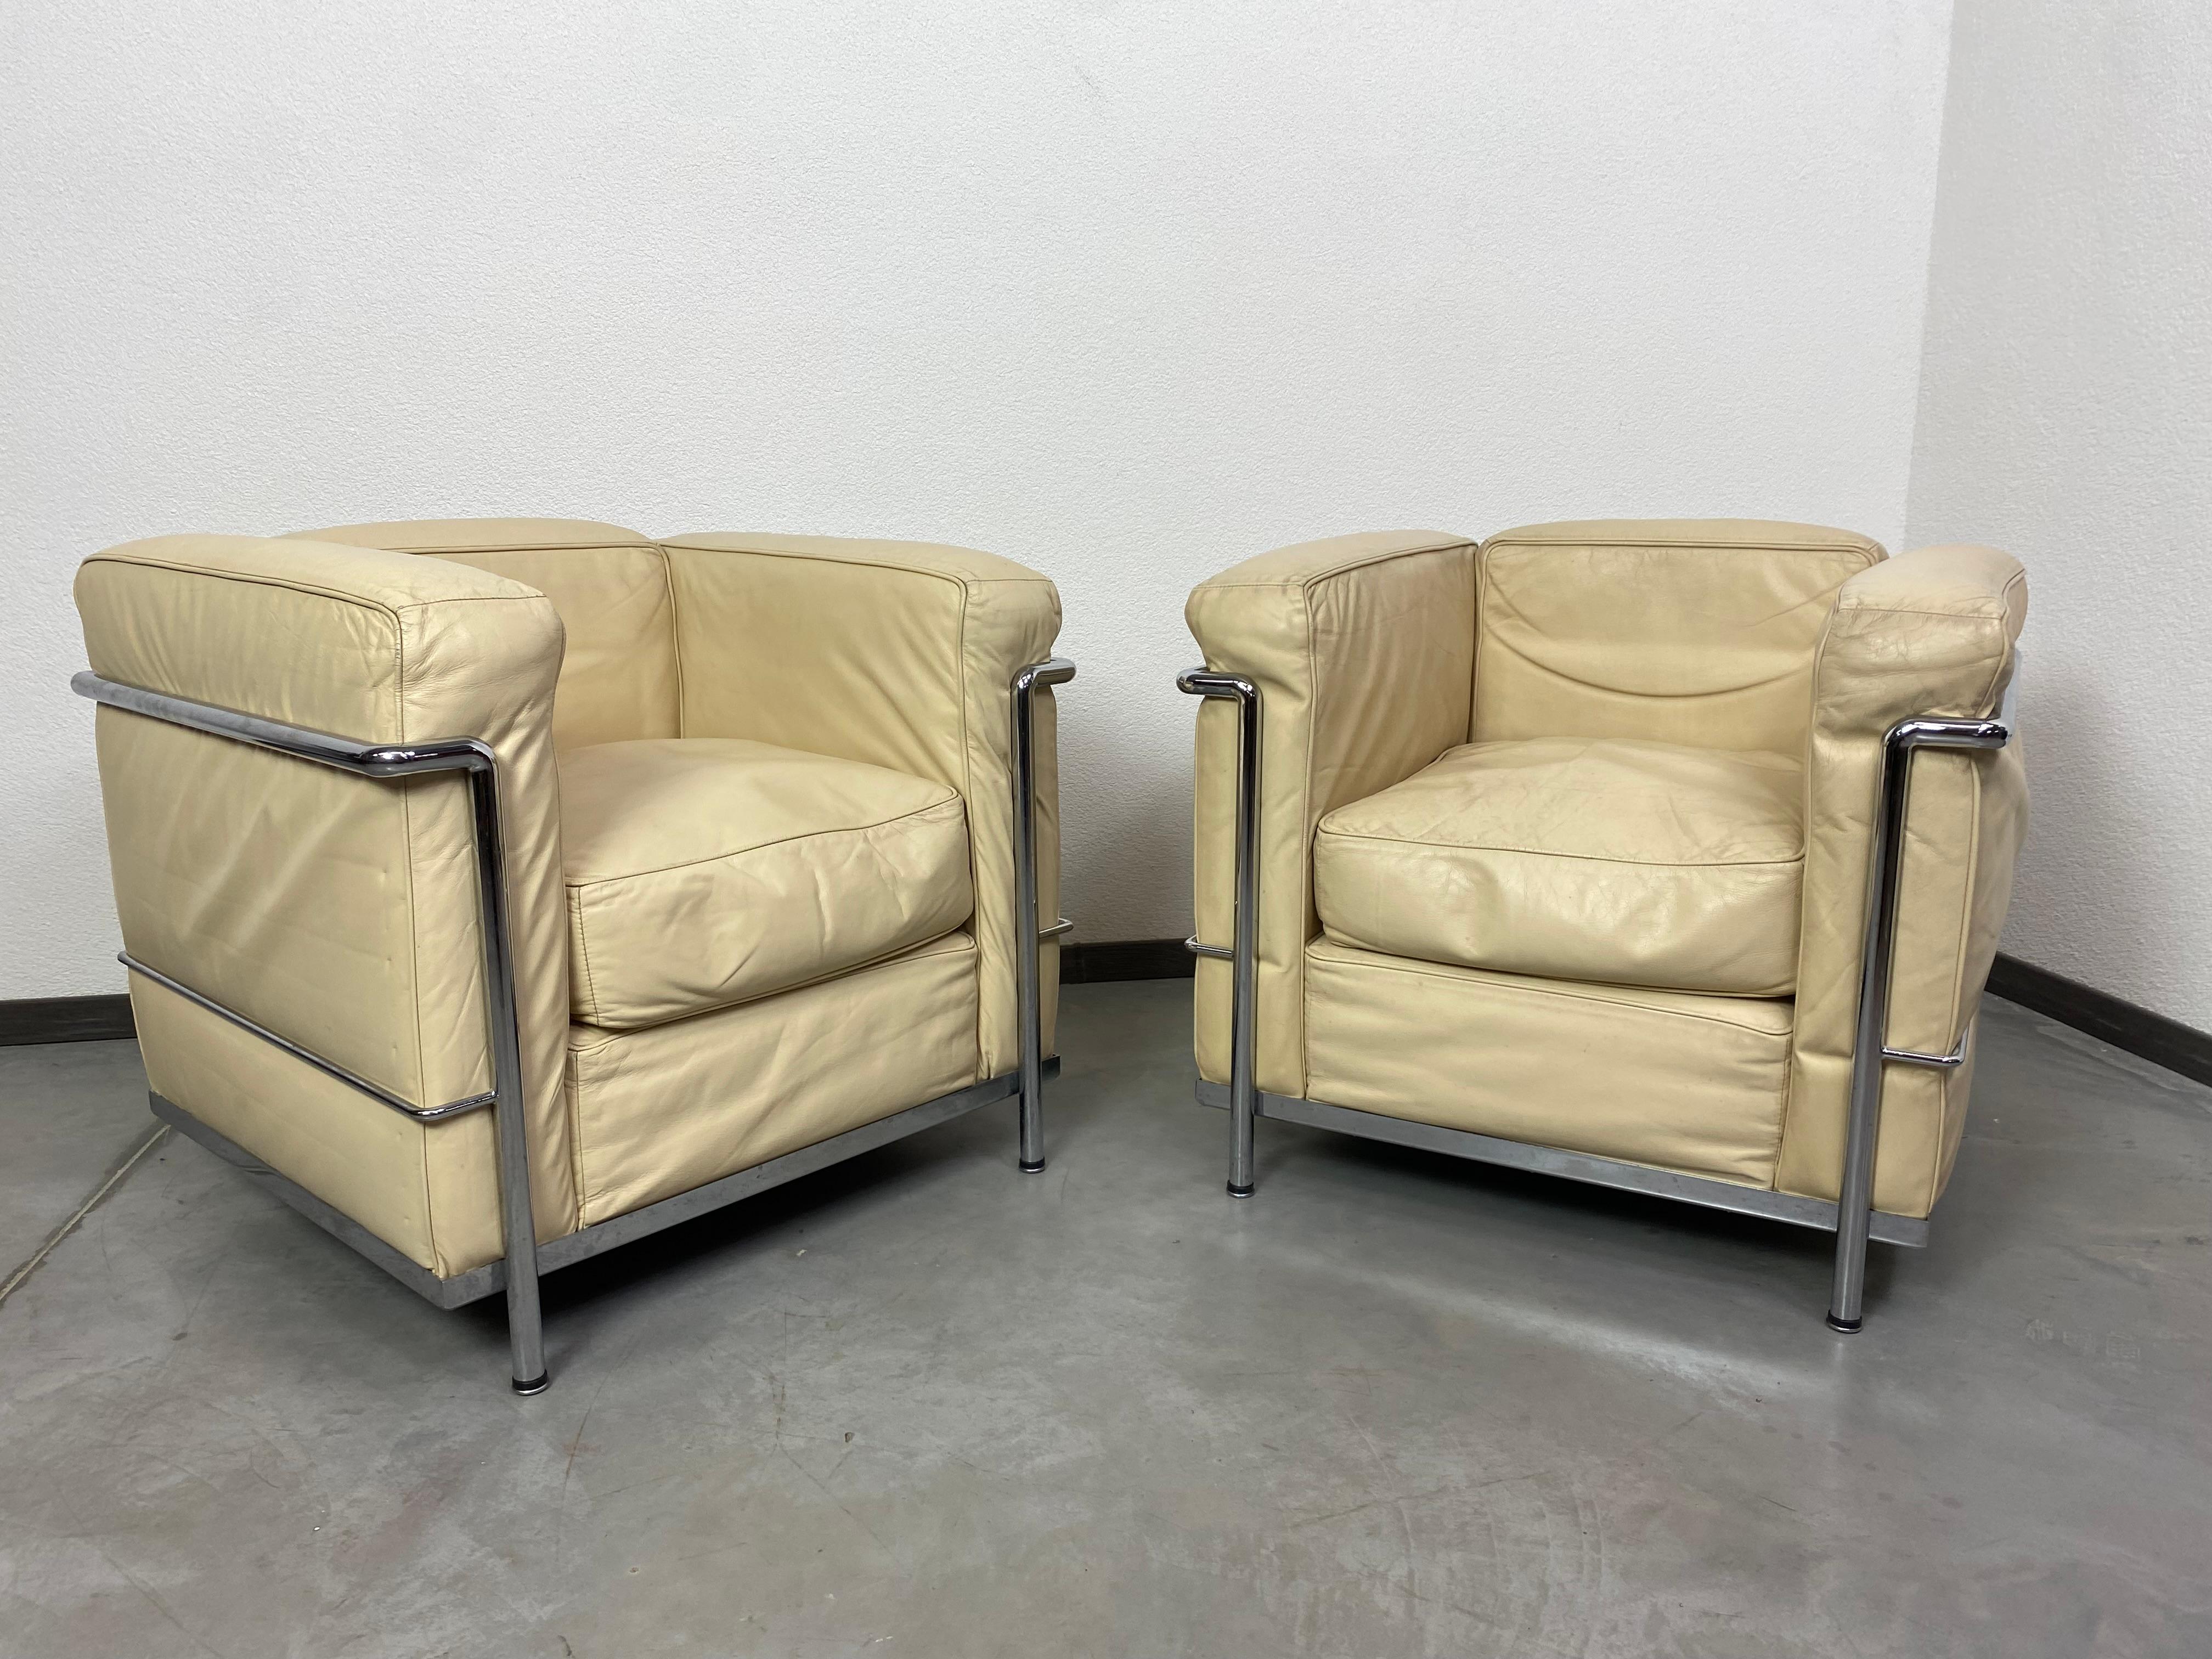 Les fauteuils club en cuir blanc LC2 ont été conçus en 1928 par Le Corbusier et produits par Cassina dans les années 1970. Très bel état d'origine avec patine.